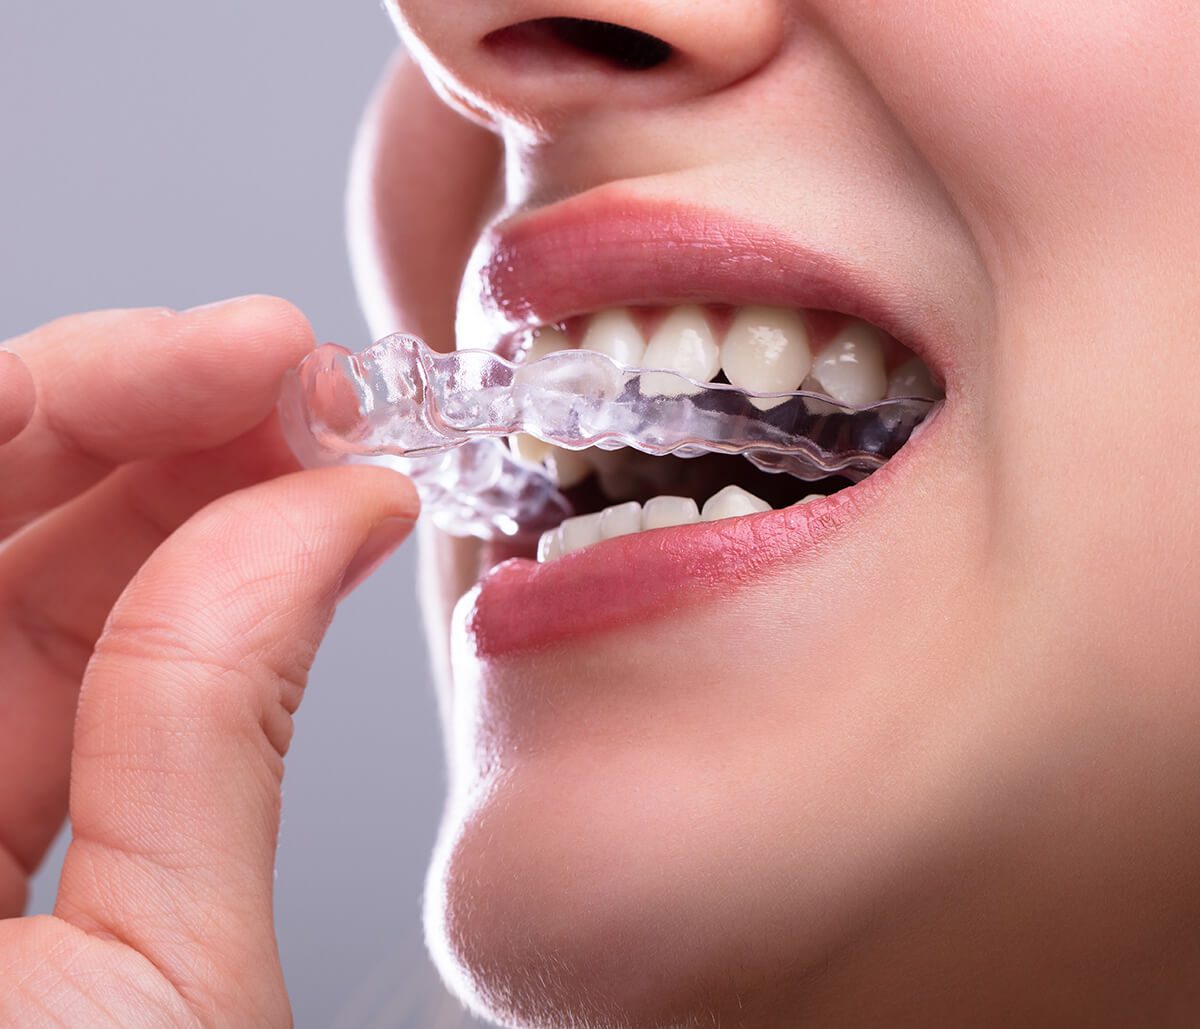 مزایا و معایب ارتودنسی نامرئی برای ردیف کردن دندانها